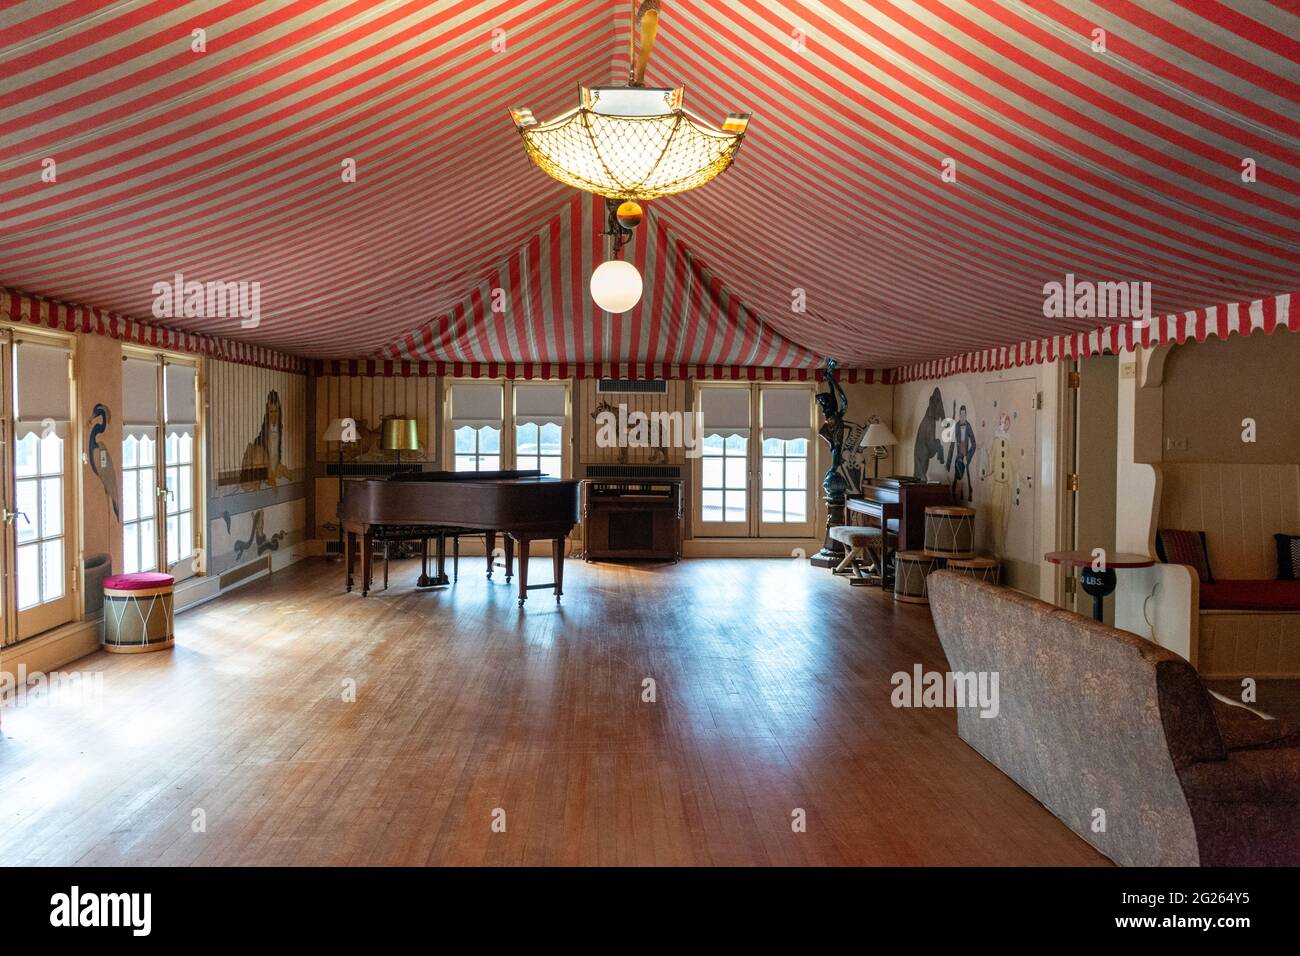 Une photo de l'intérieur de la salle de jeux élaborée à l'intérieur de la maison Reynolds, une maison historique disponible à la location sur l'île de Sapelo, Géorgie, États-Unis. Banque D'Images